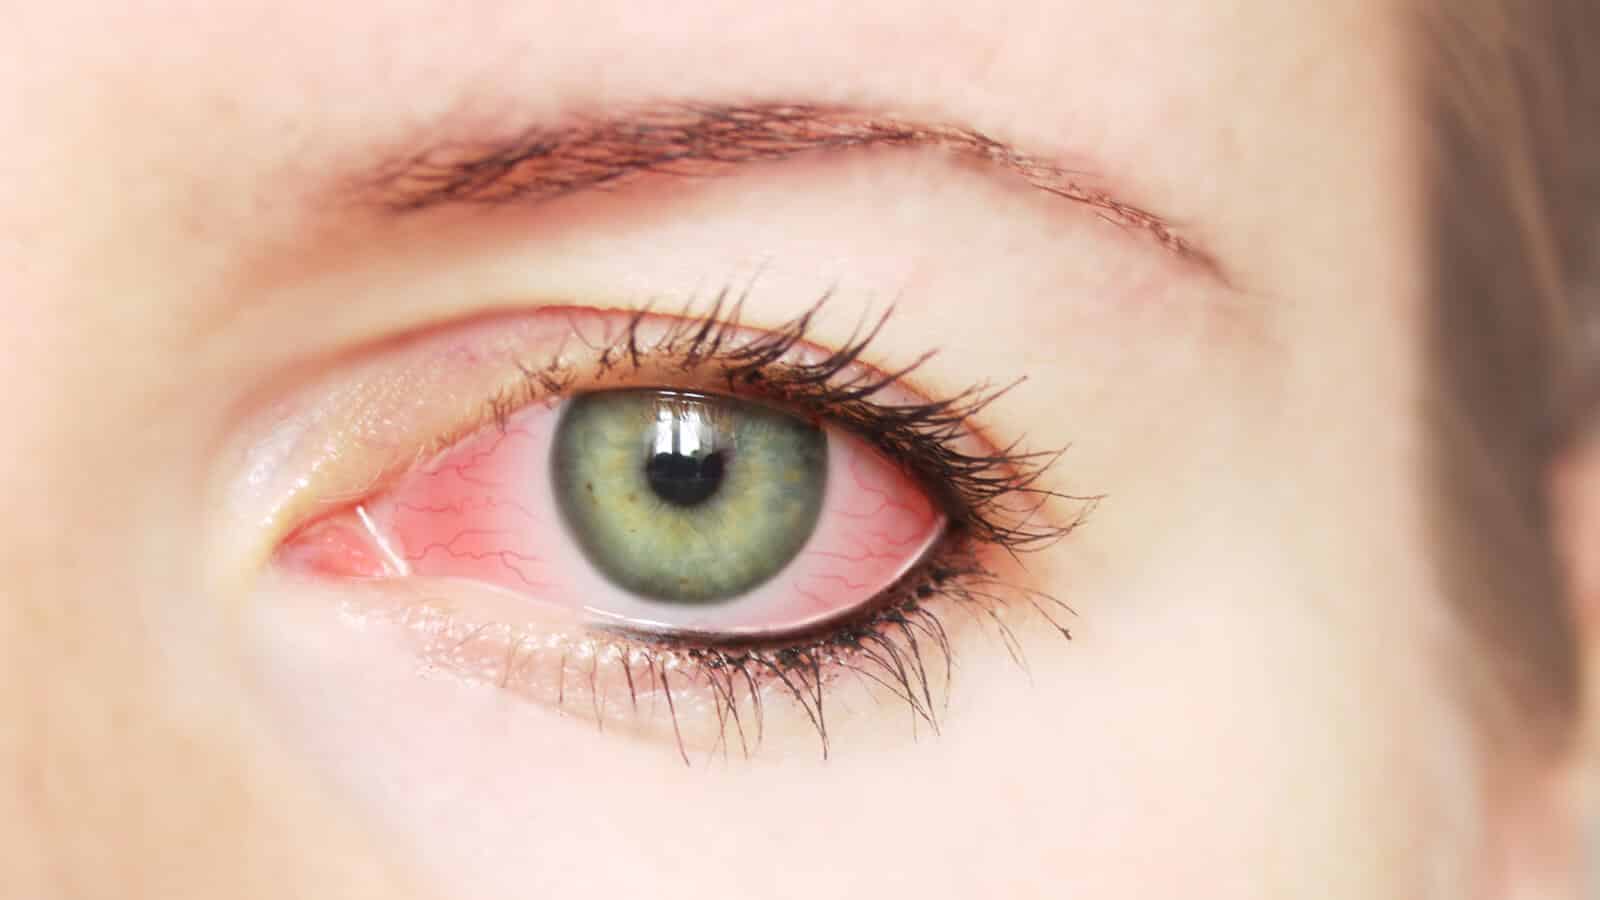 علاج التهاب الملتحمة احمرار العين مجلة نقطة العلمية